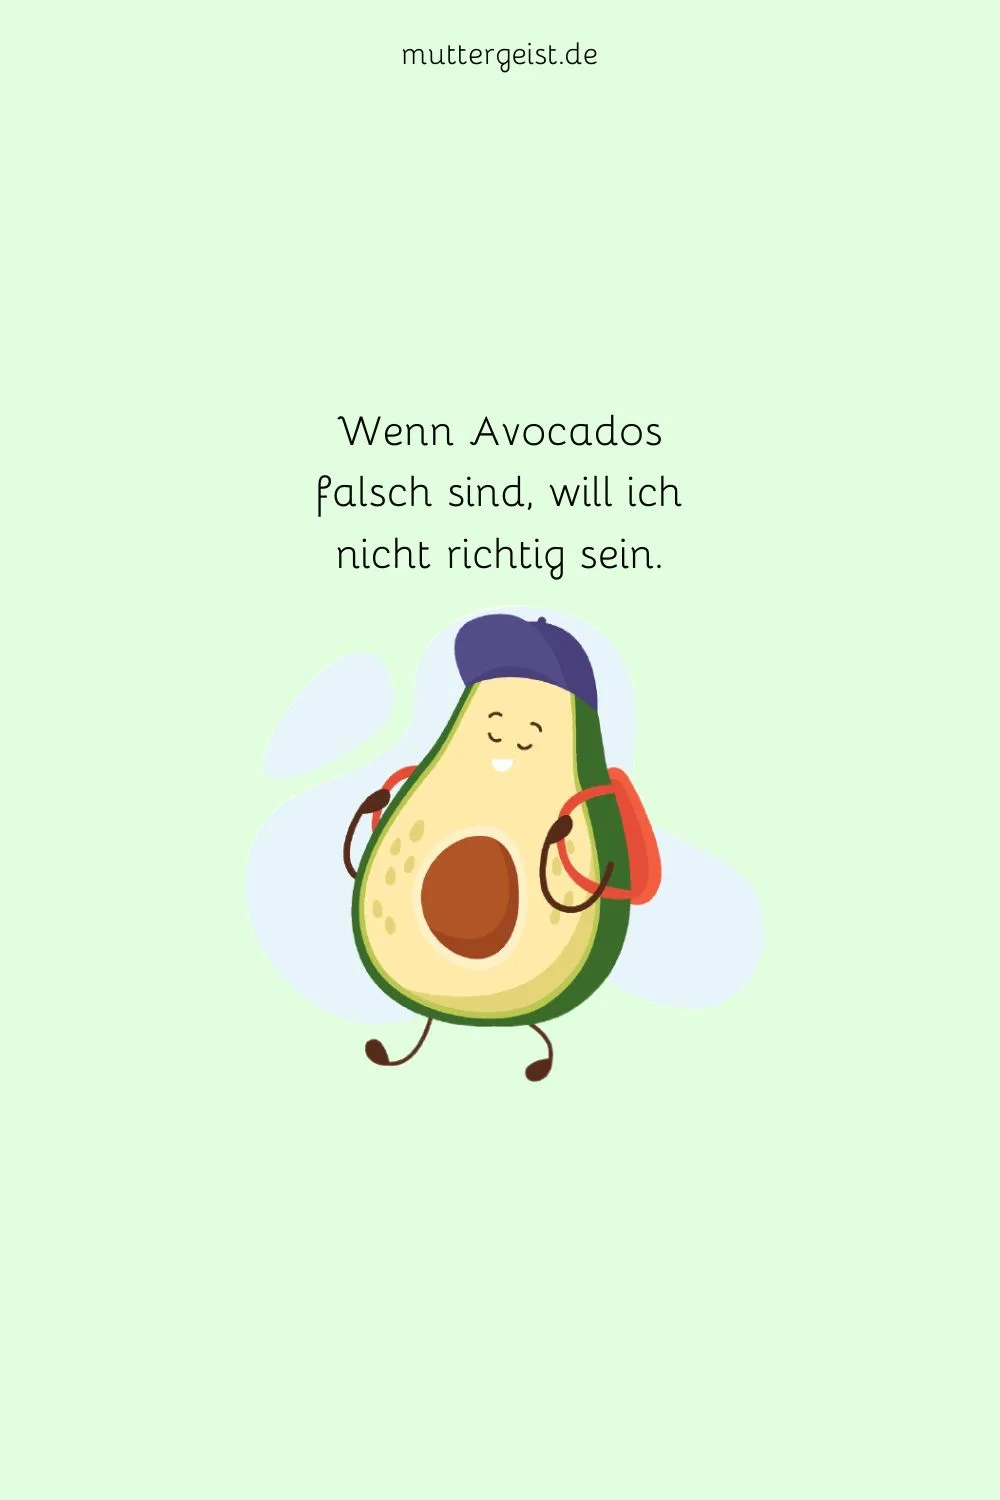 Wenn Avocados falsch sind, will ich nicht richtig sein